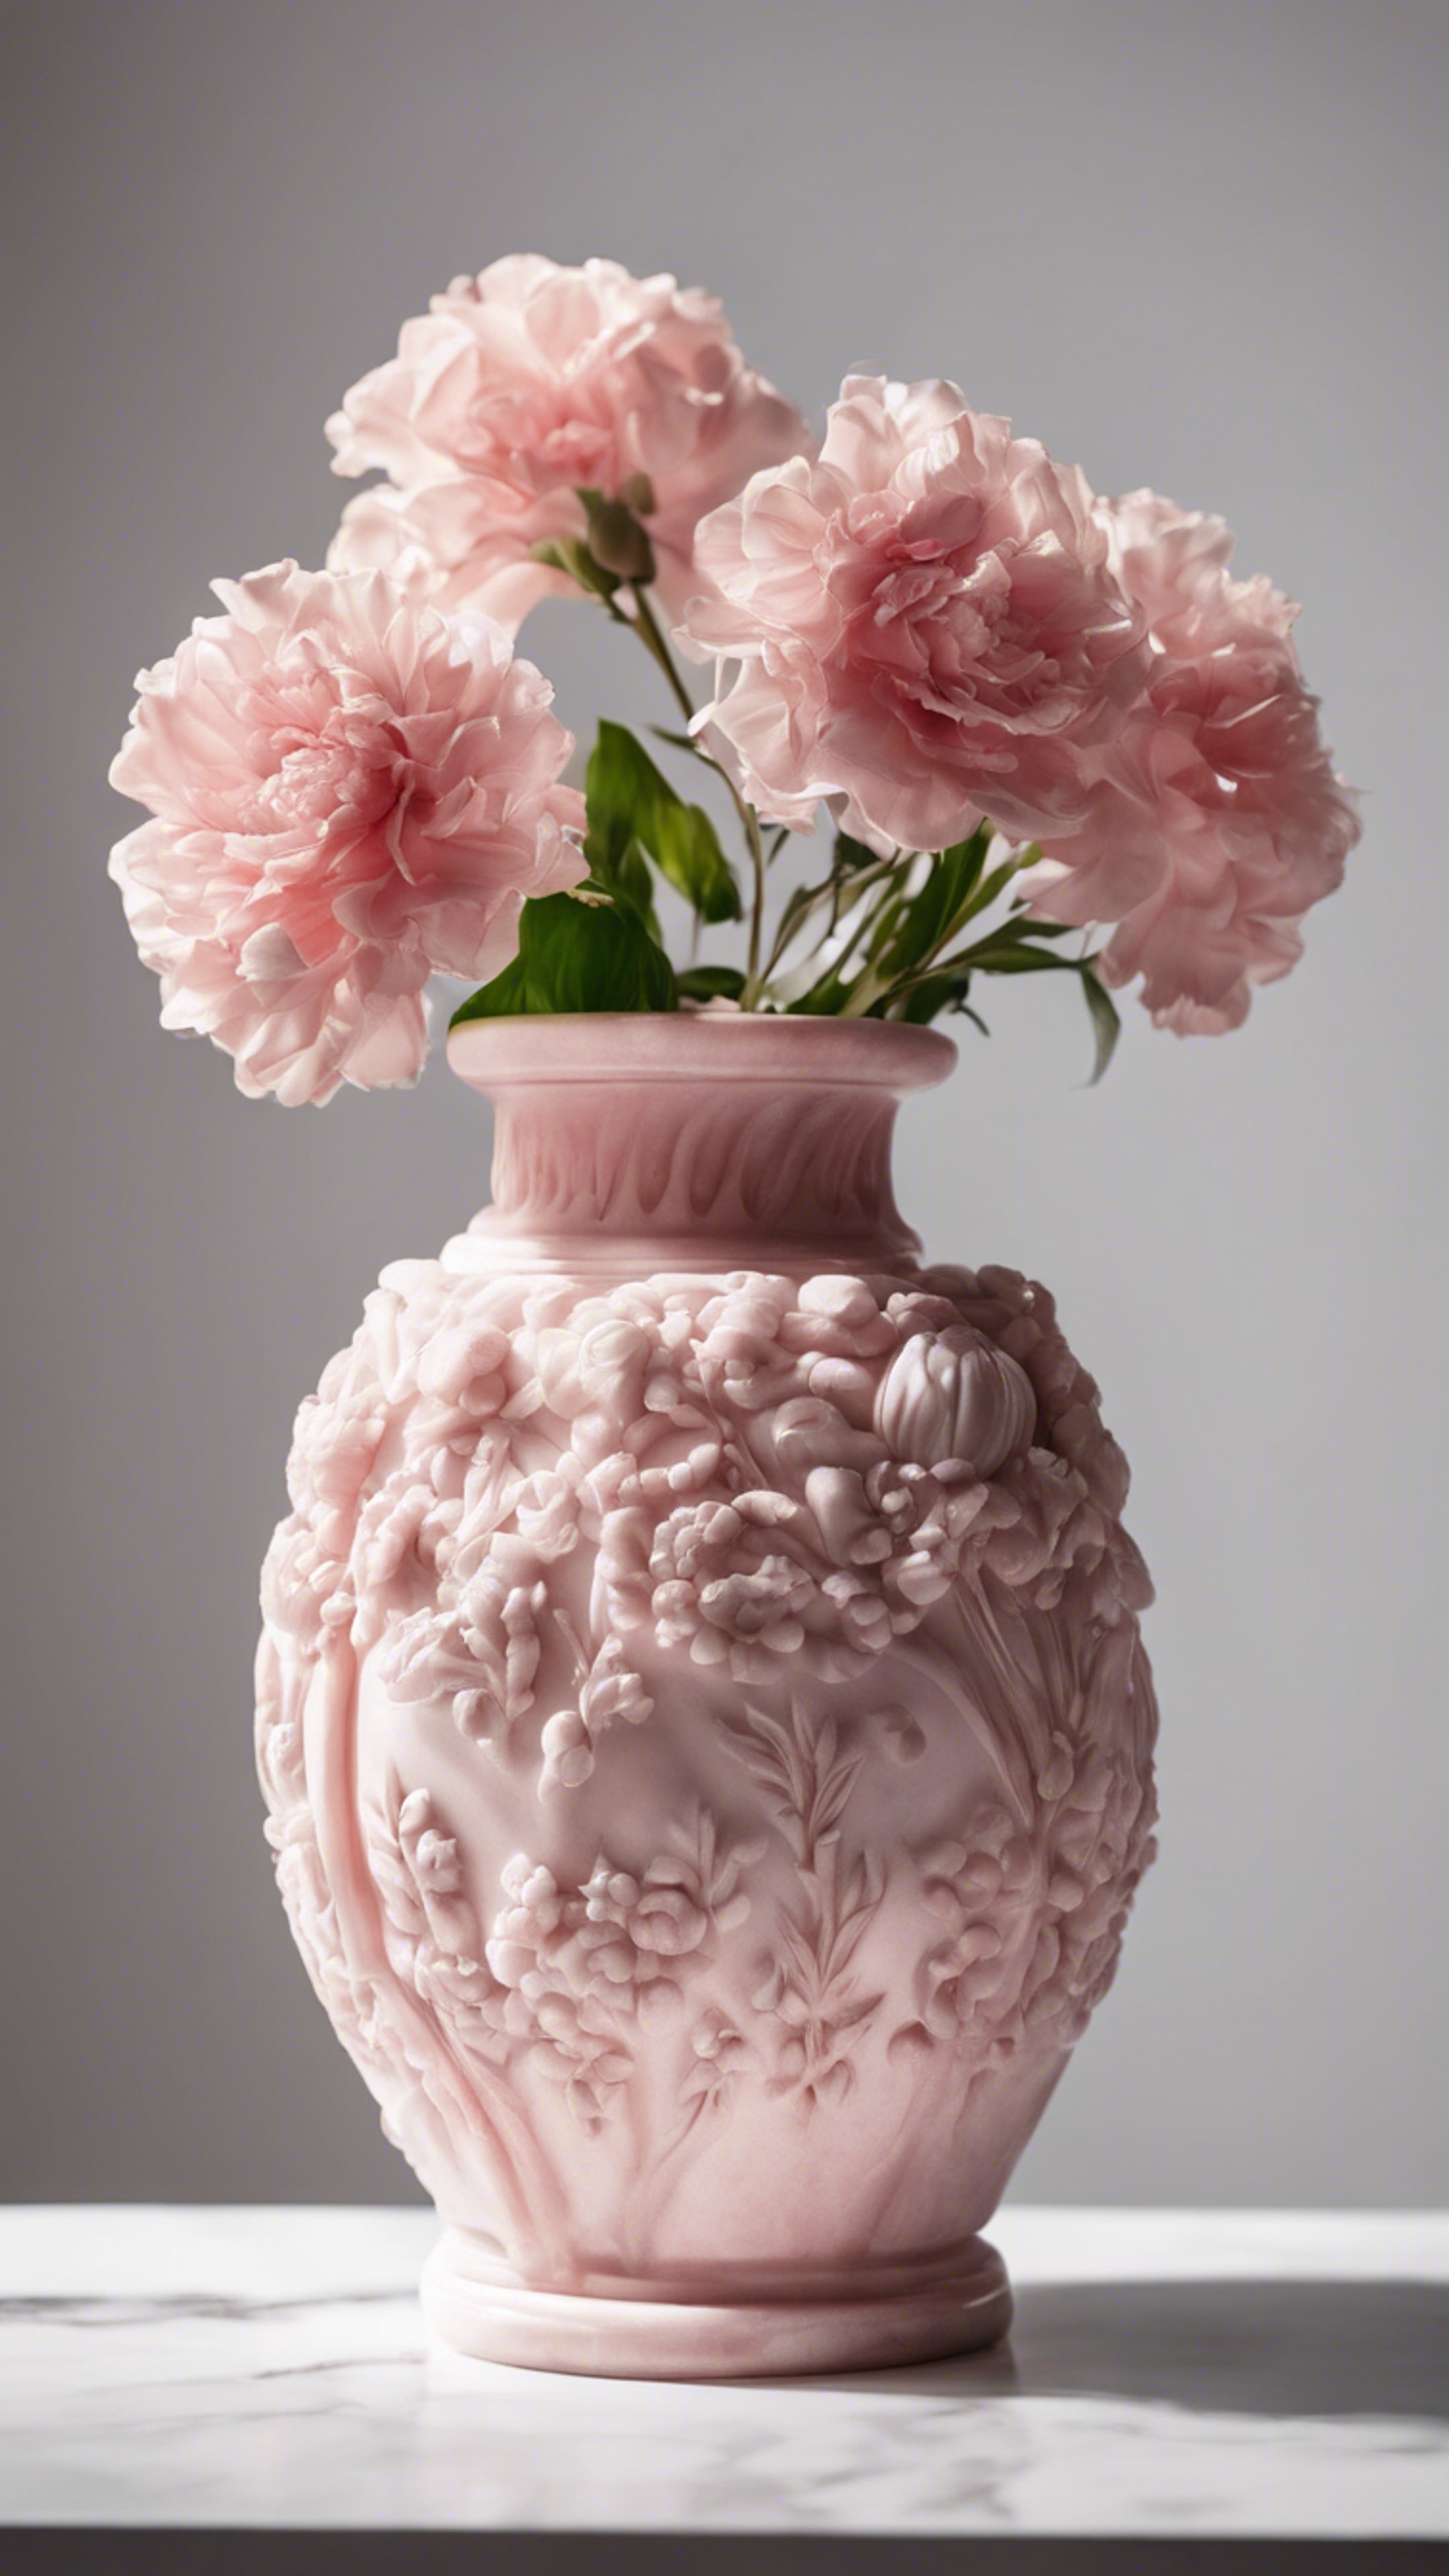 Elegantly carved pink marble flower vase against a white background. Tapéta[b14a0bd2340d44aeb9d9]